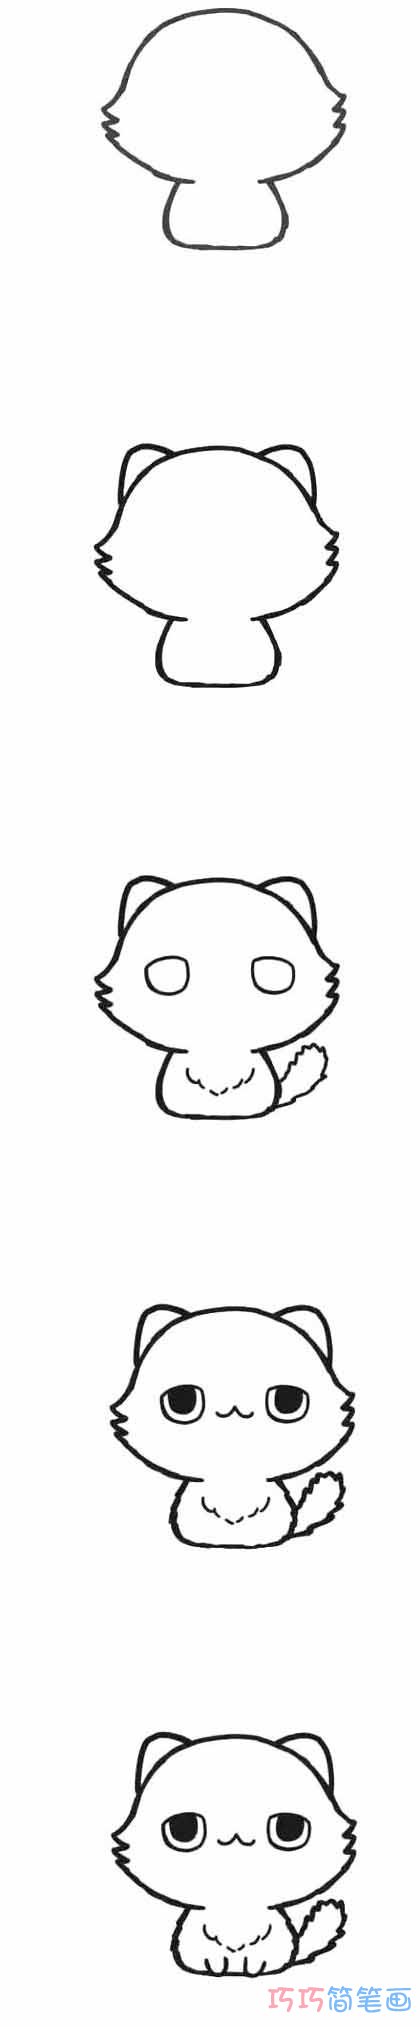 波斯猫怎么画可爱 带步骤图波斯猫简笔画图片